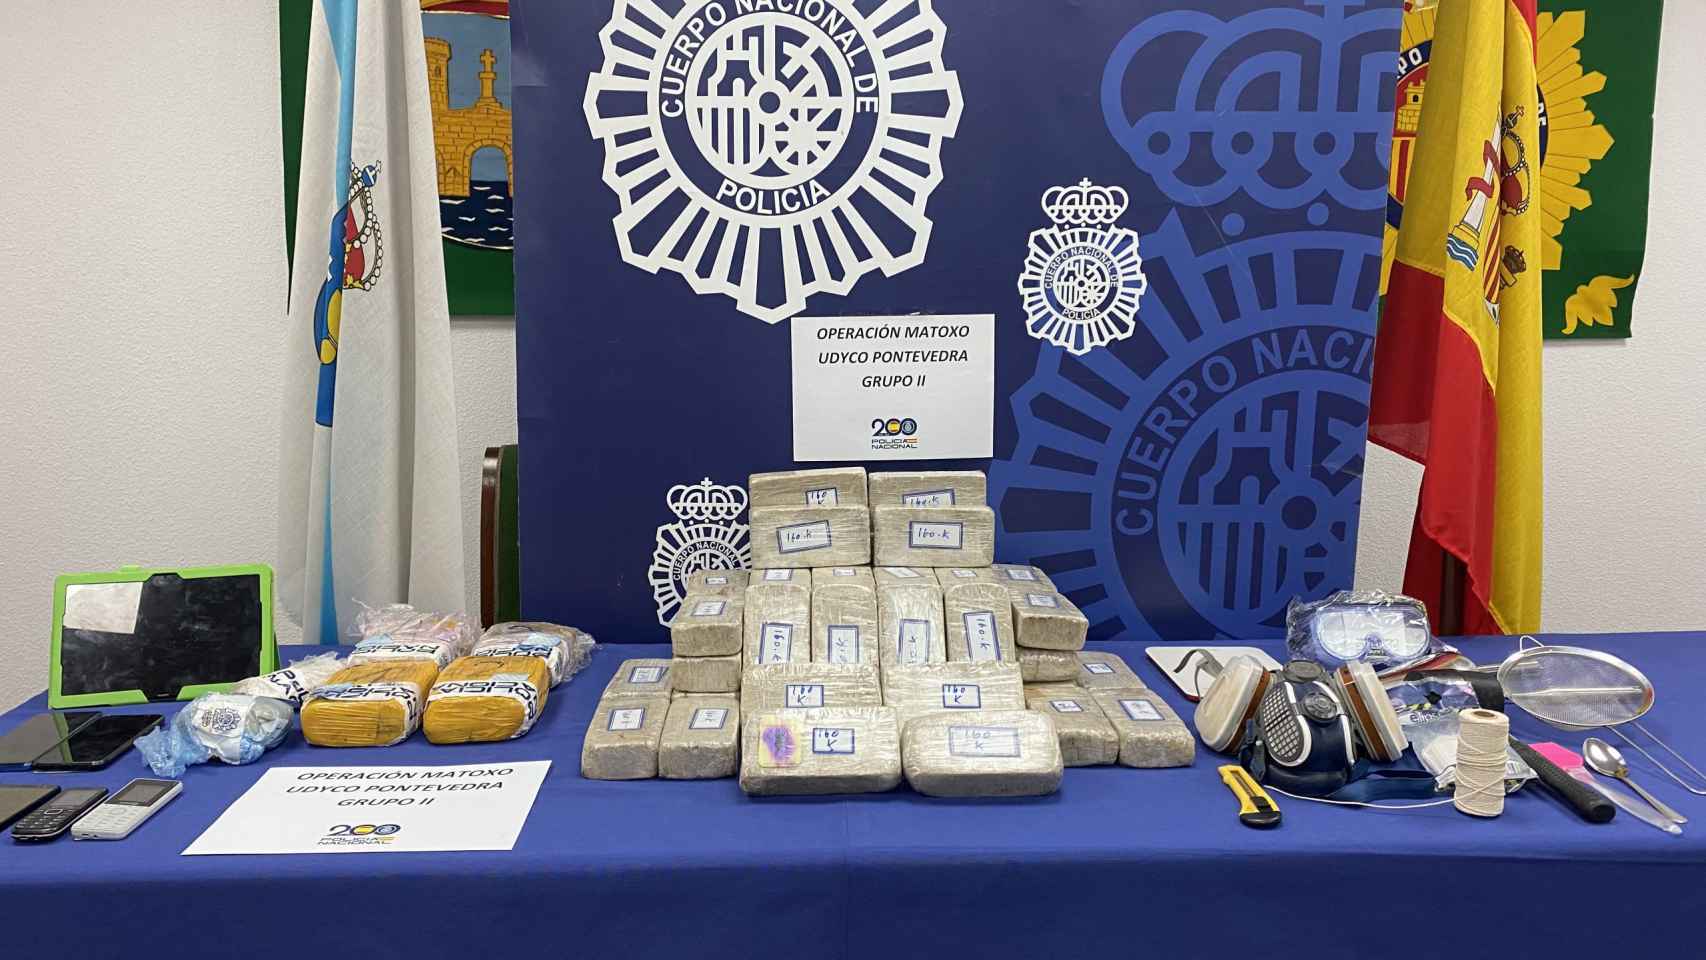 Estupefacientes y objetos incautados por la Policía Nacional en la operación ‘Matoxo’, en Nigrán (Pontevedra).